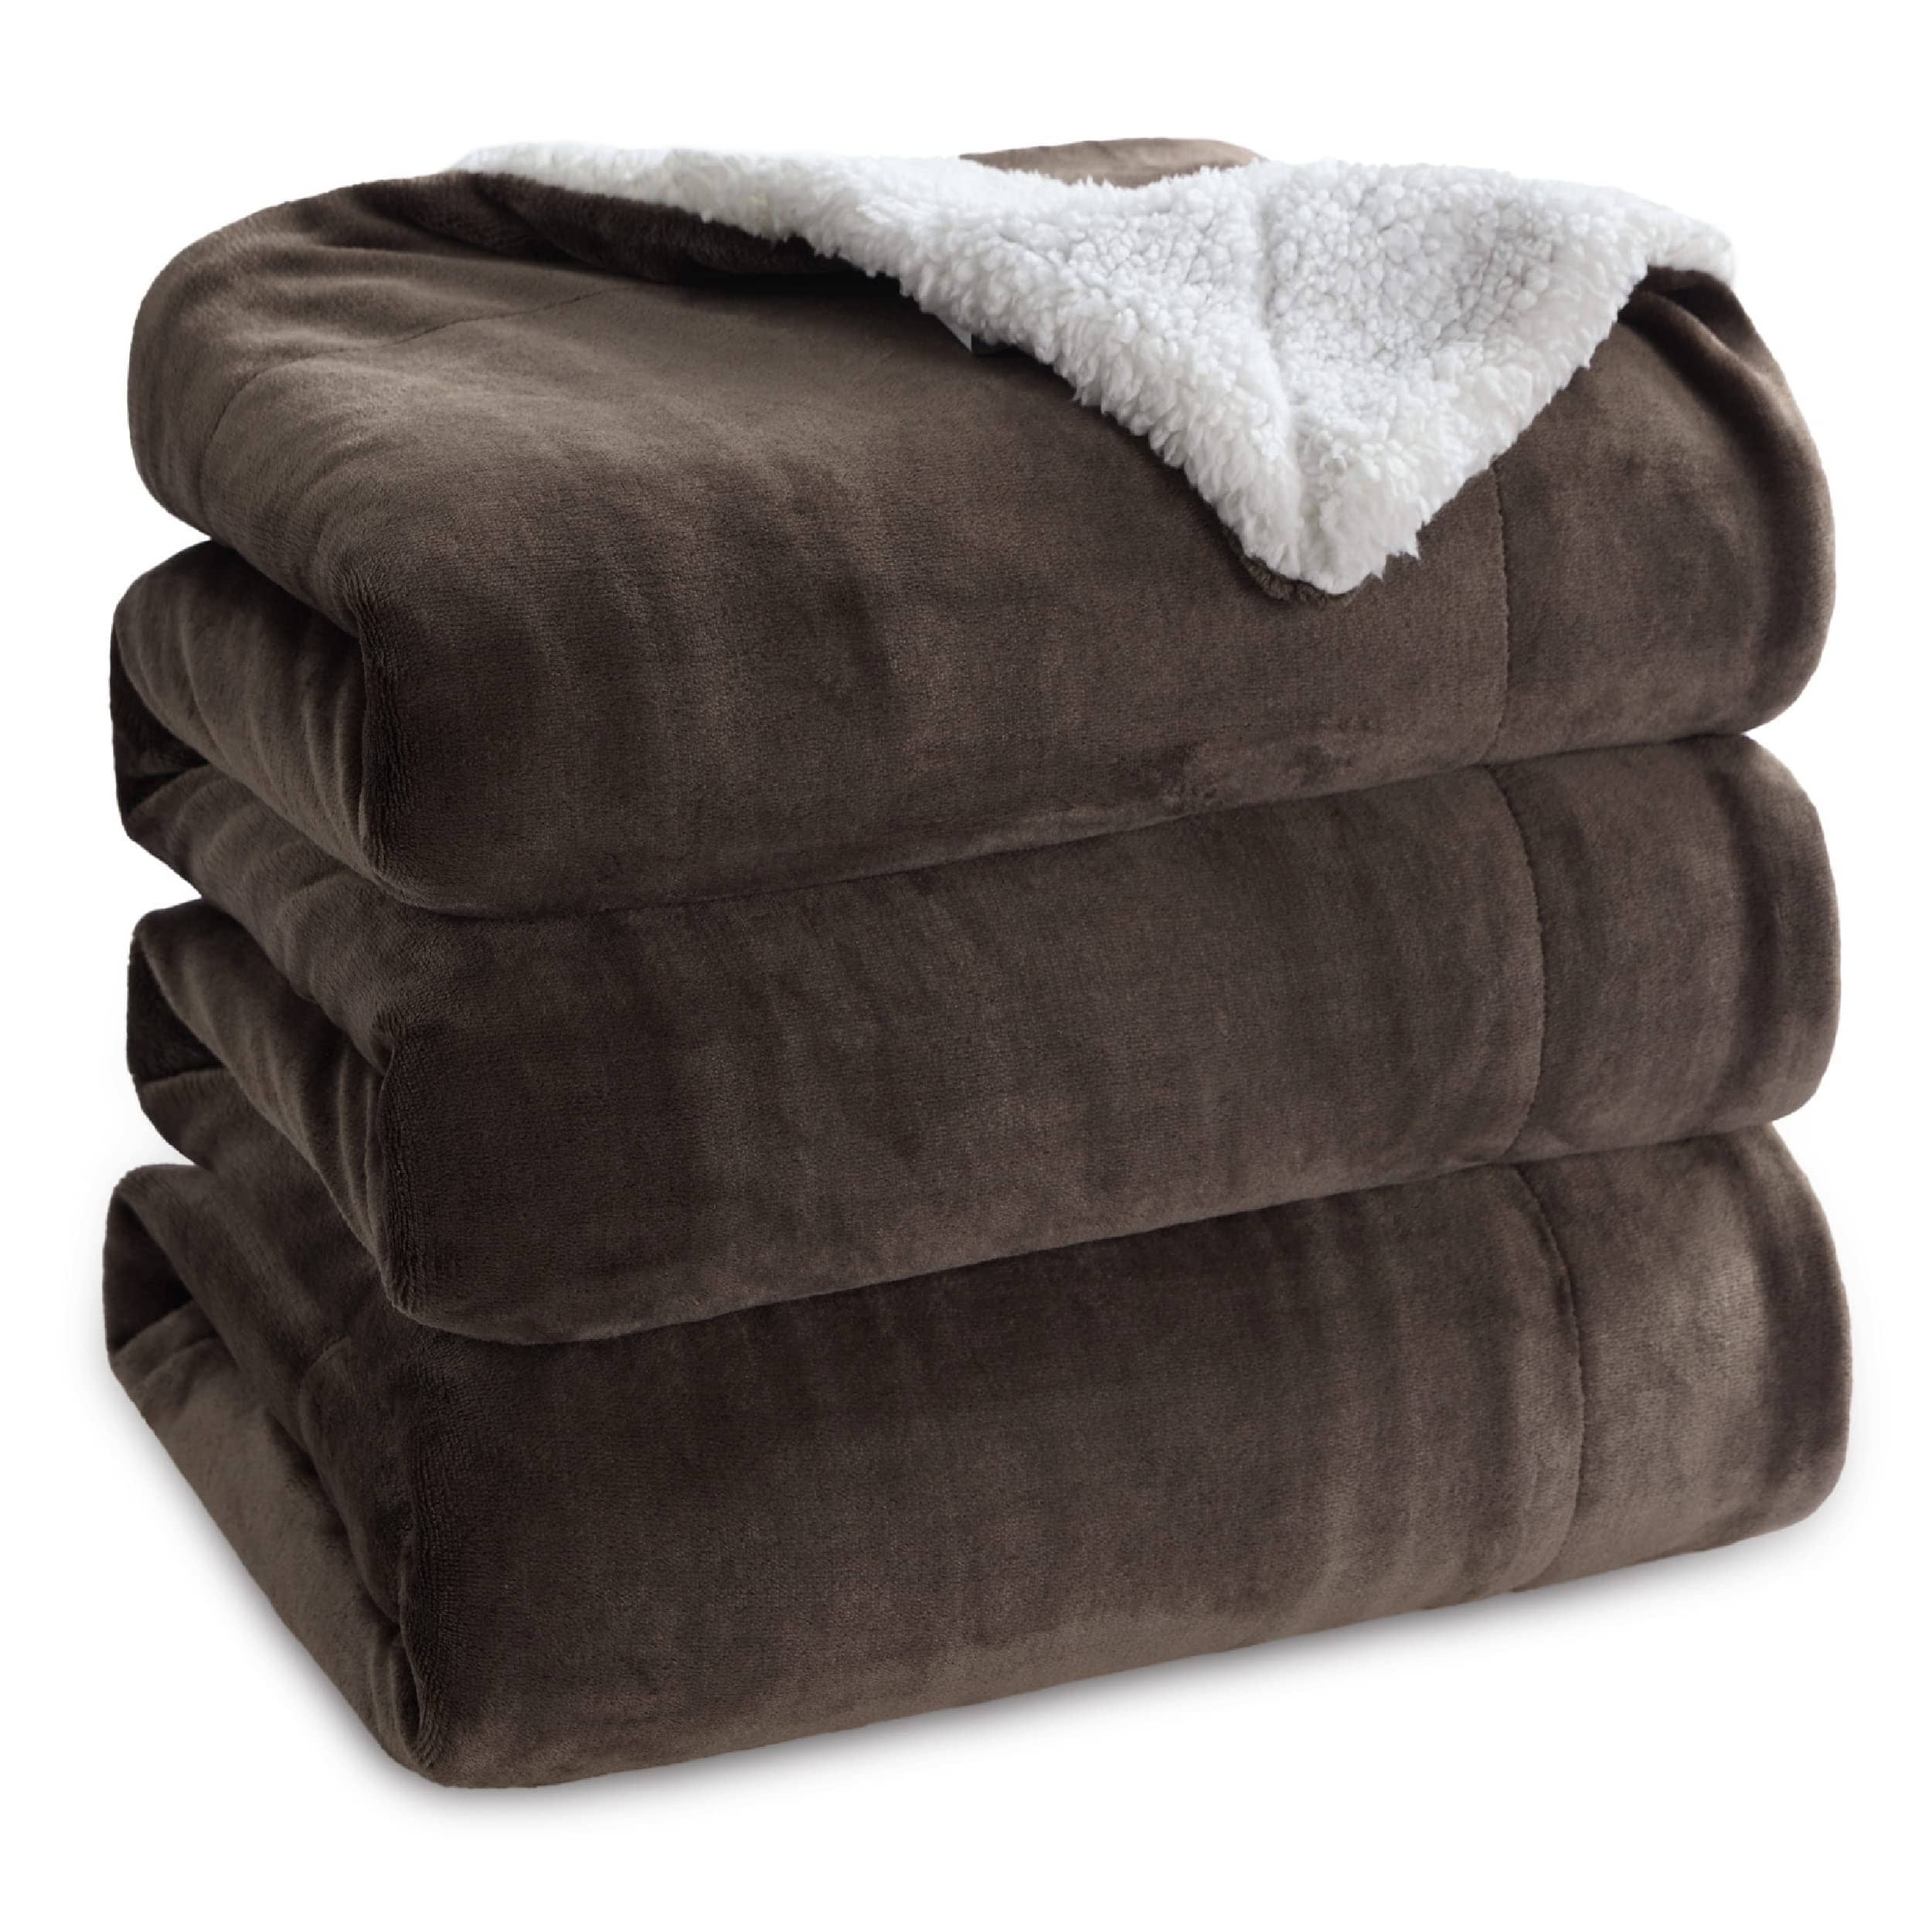 Bedsure Sherpa and Fleece Reversable Blanket